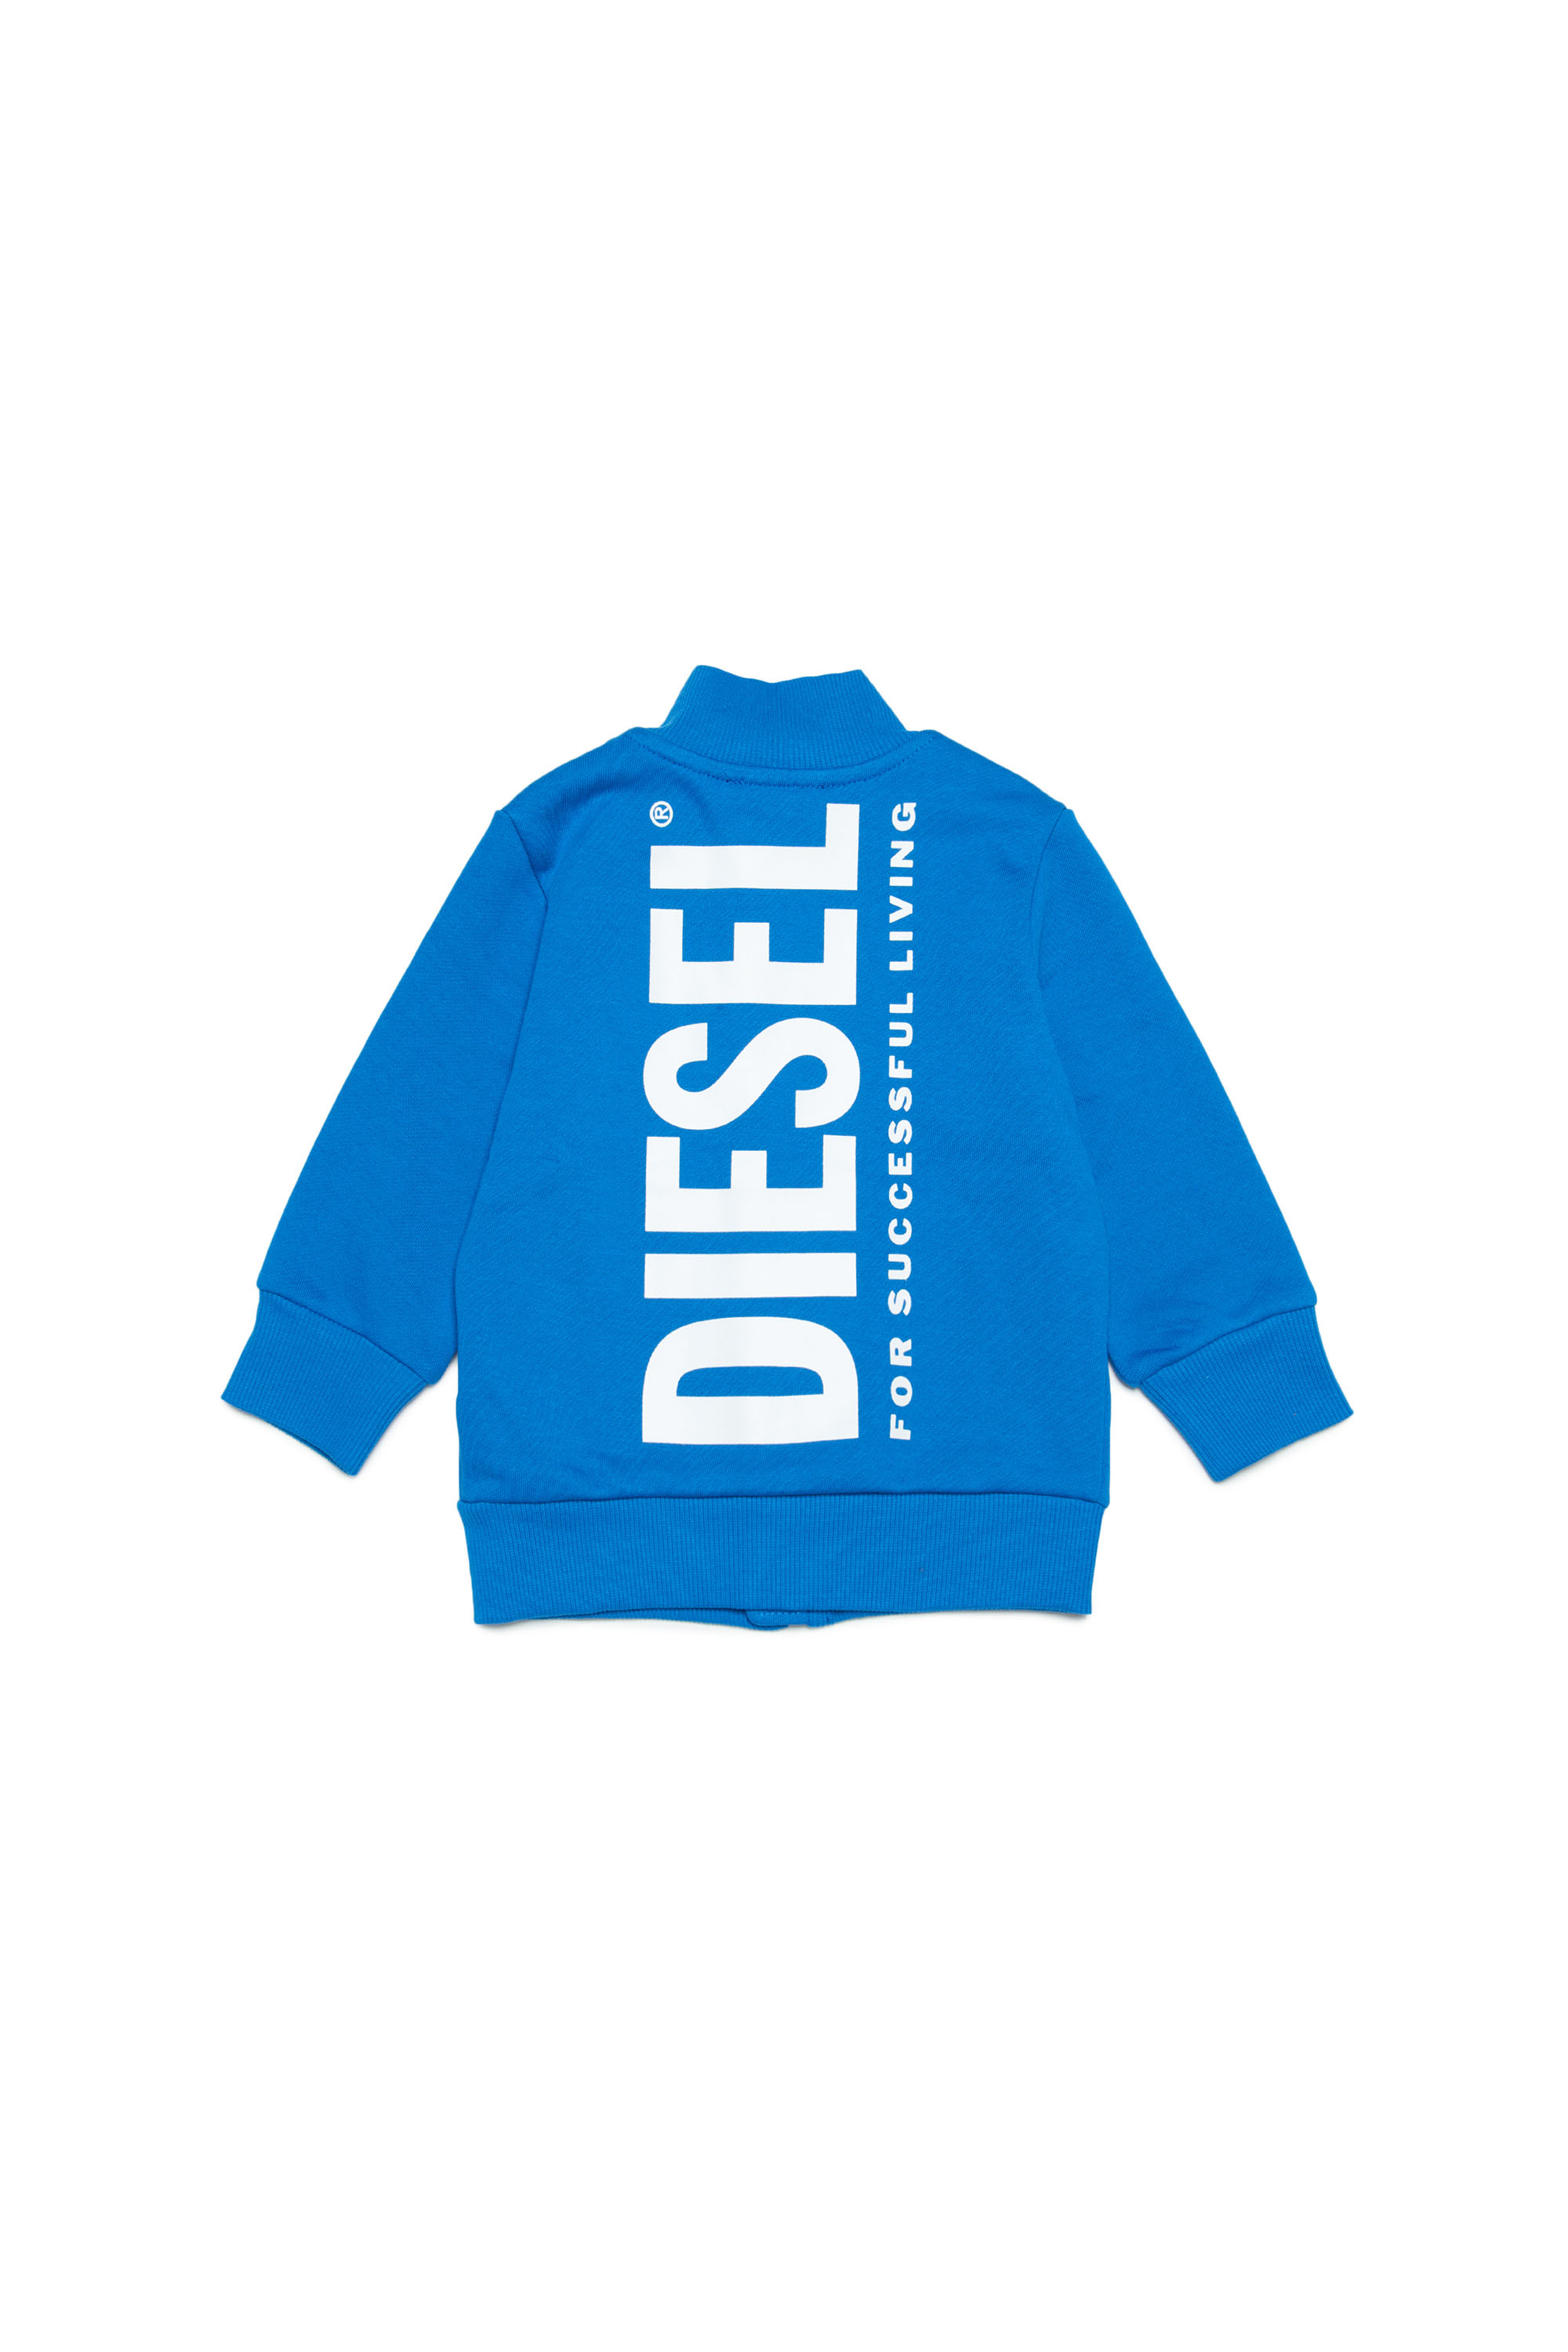 Diesel - SOLIB, Blue - Image 2